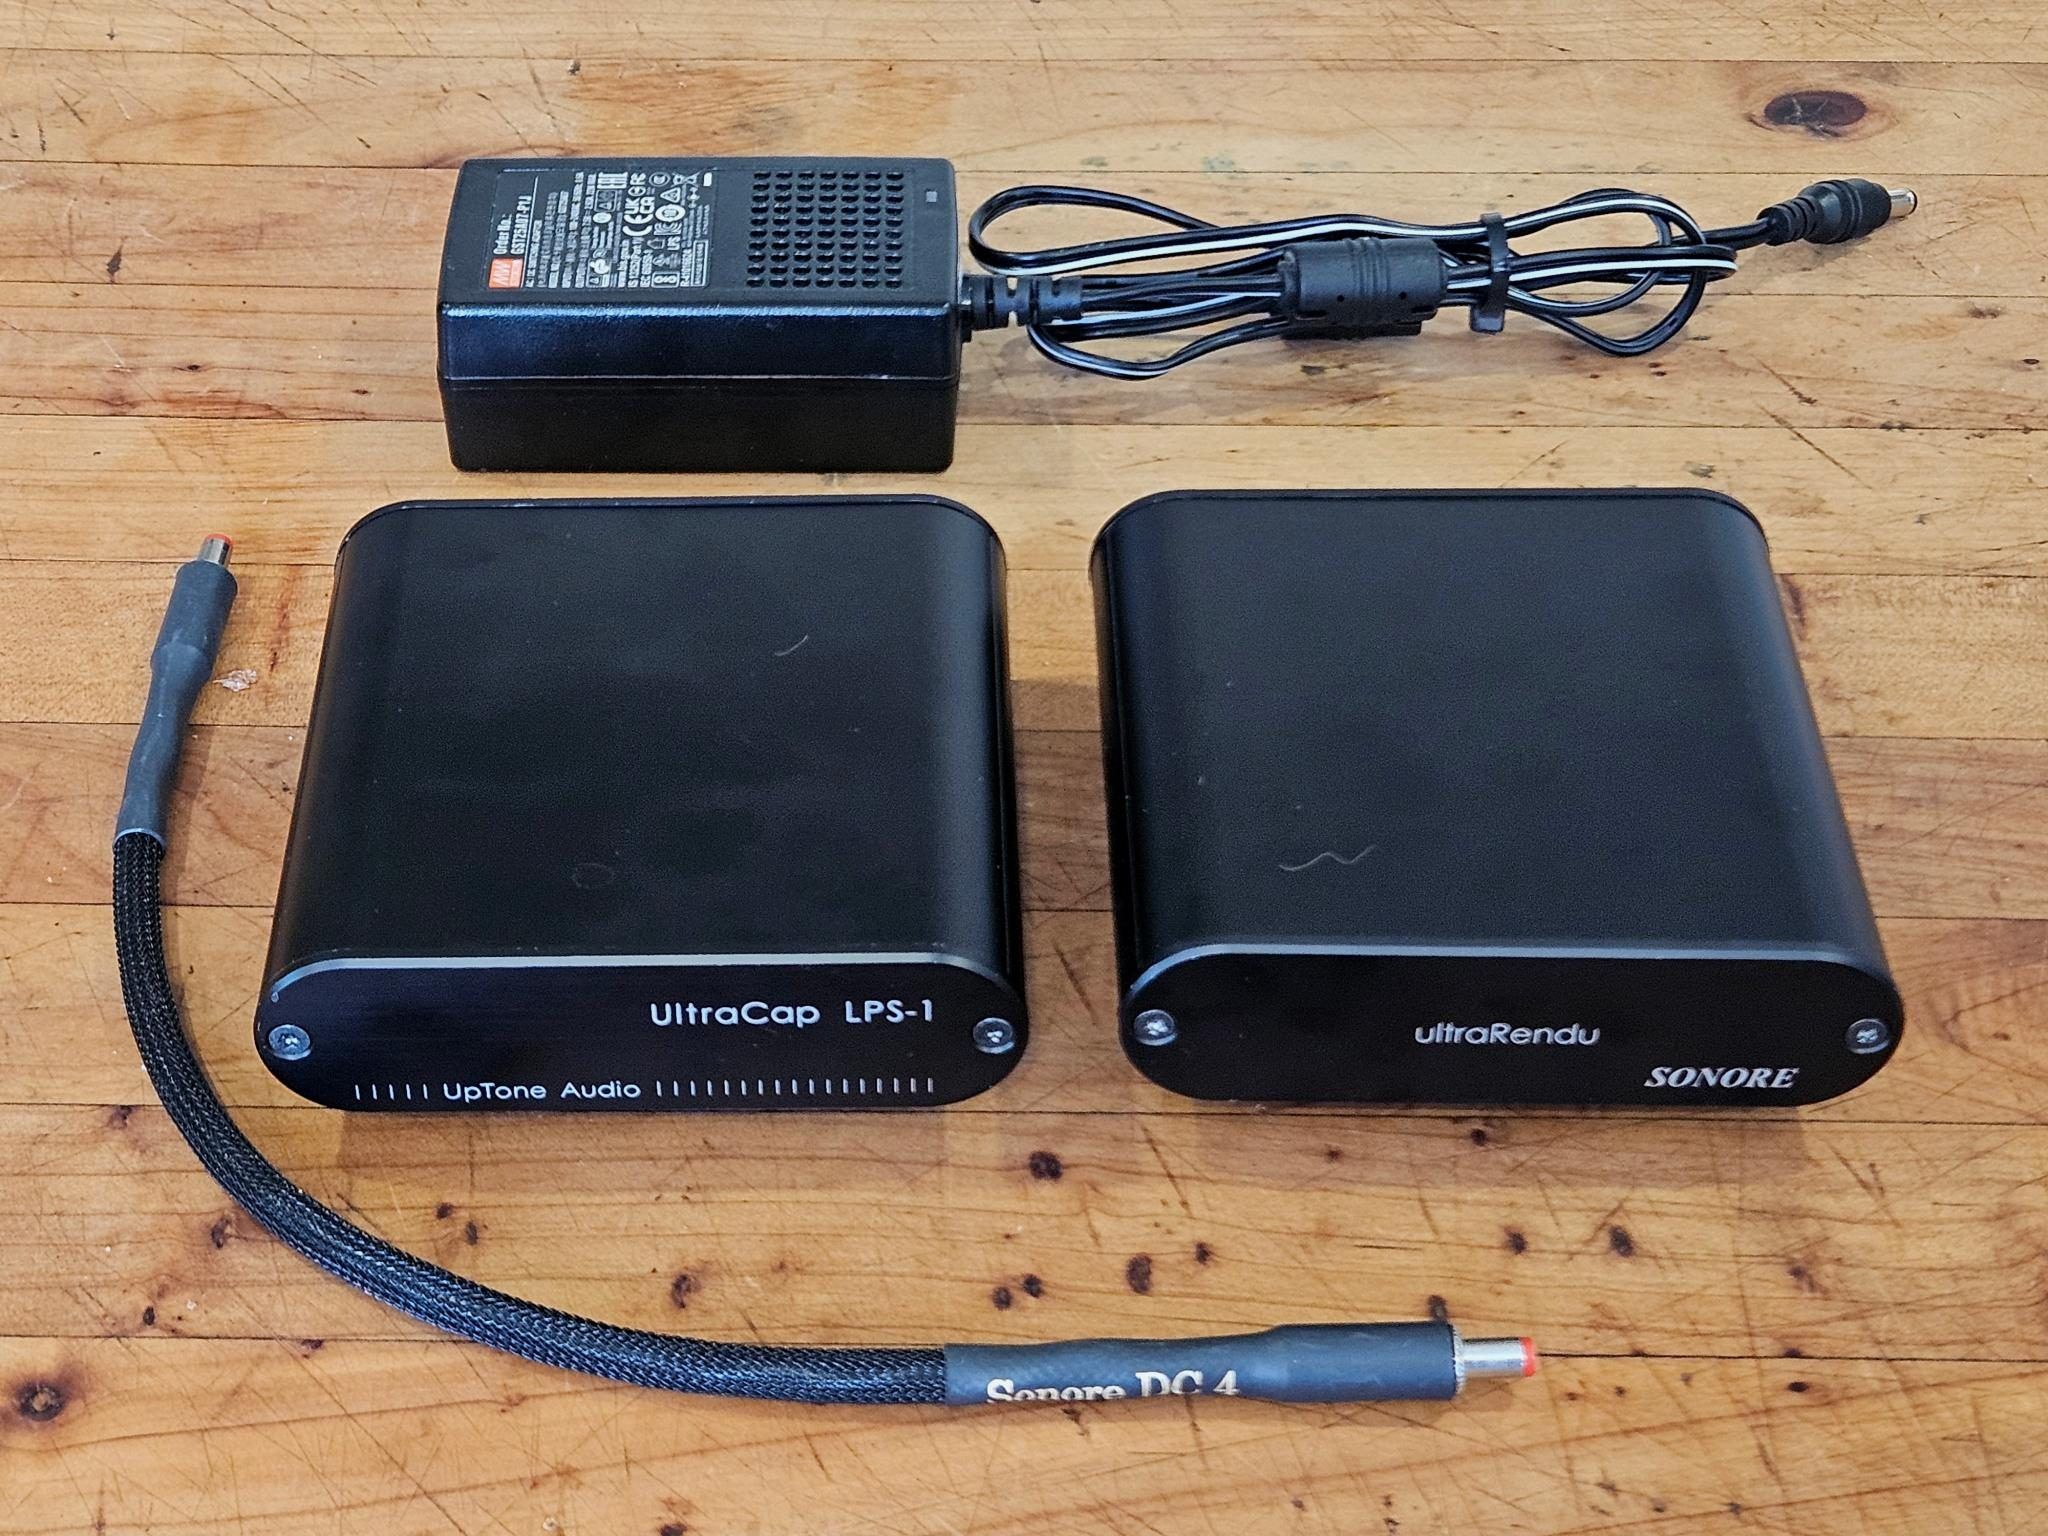 Sonore UltraRendu v1.3 + UpTone Audio UltraCap LPS 1 + ... 4